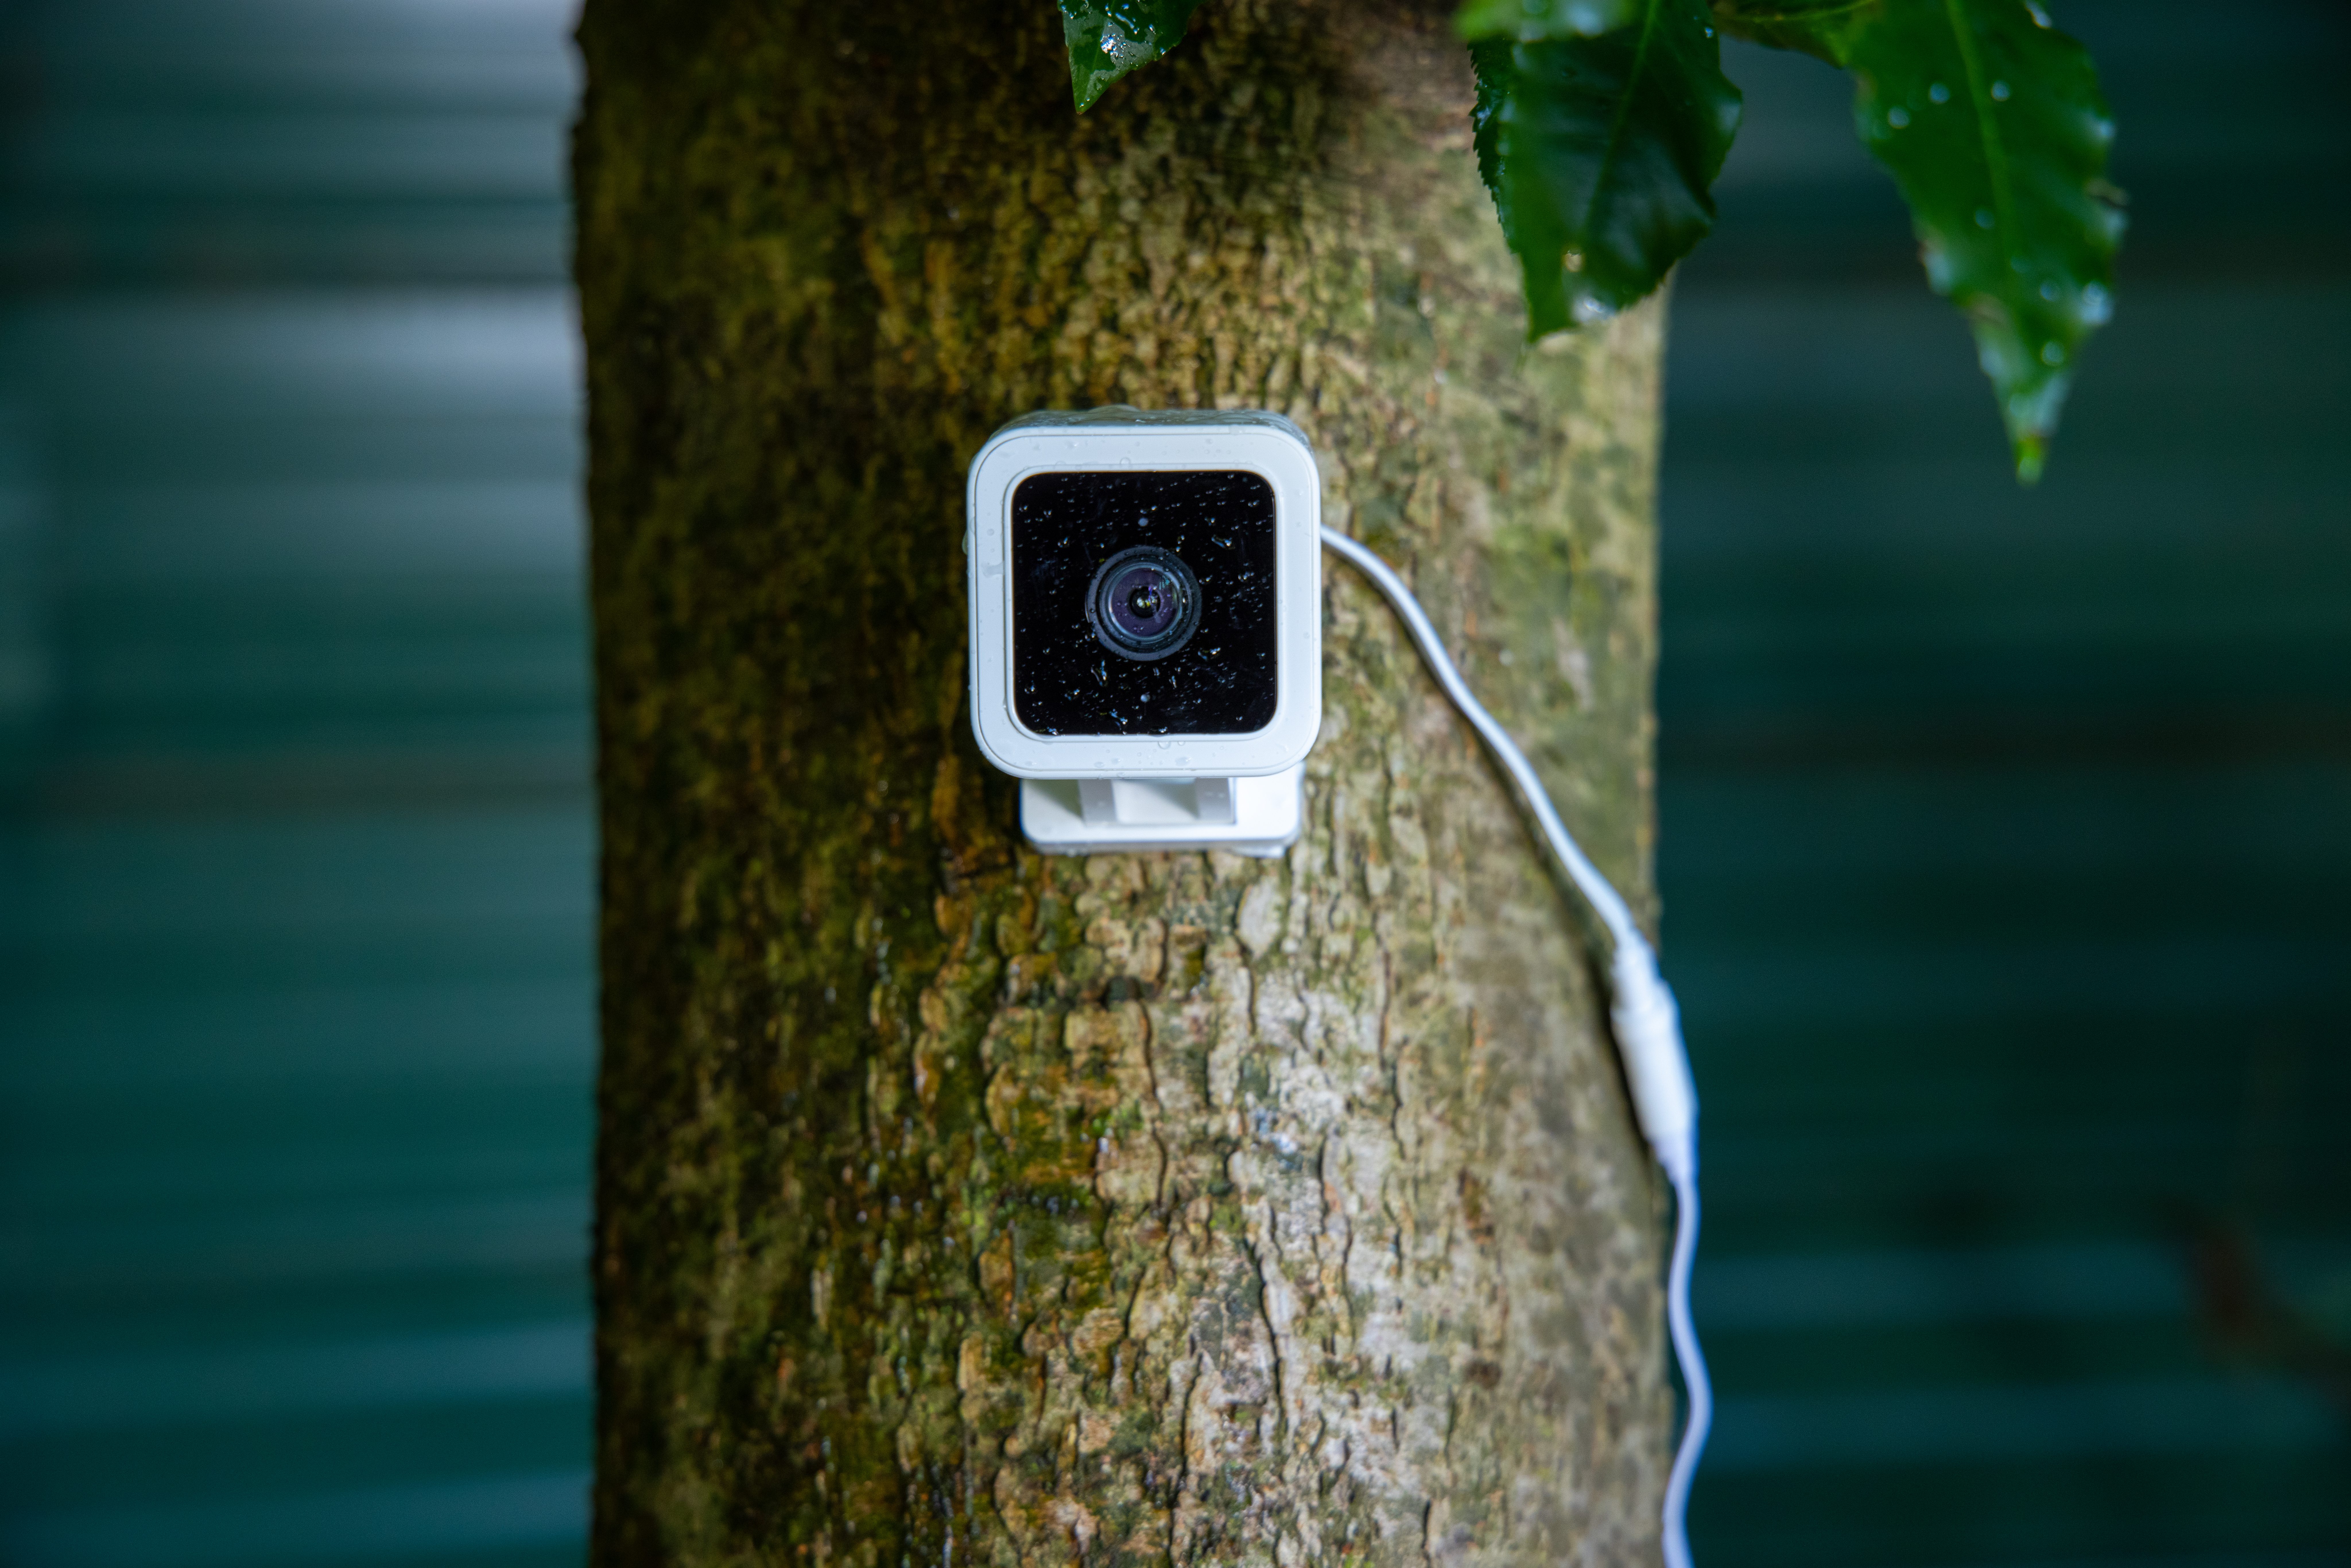 wyze outdoor security cameras